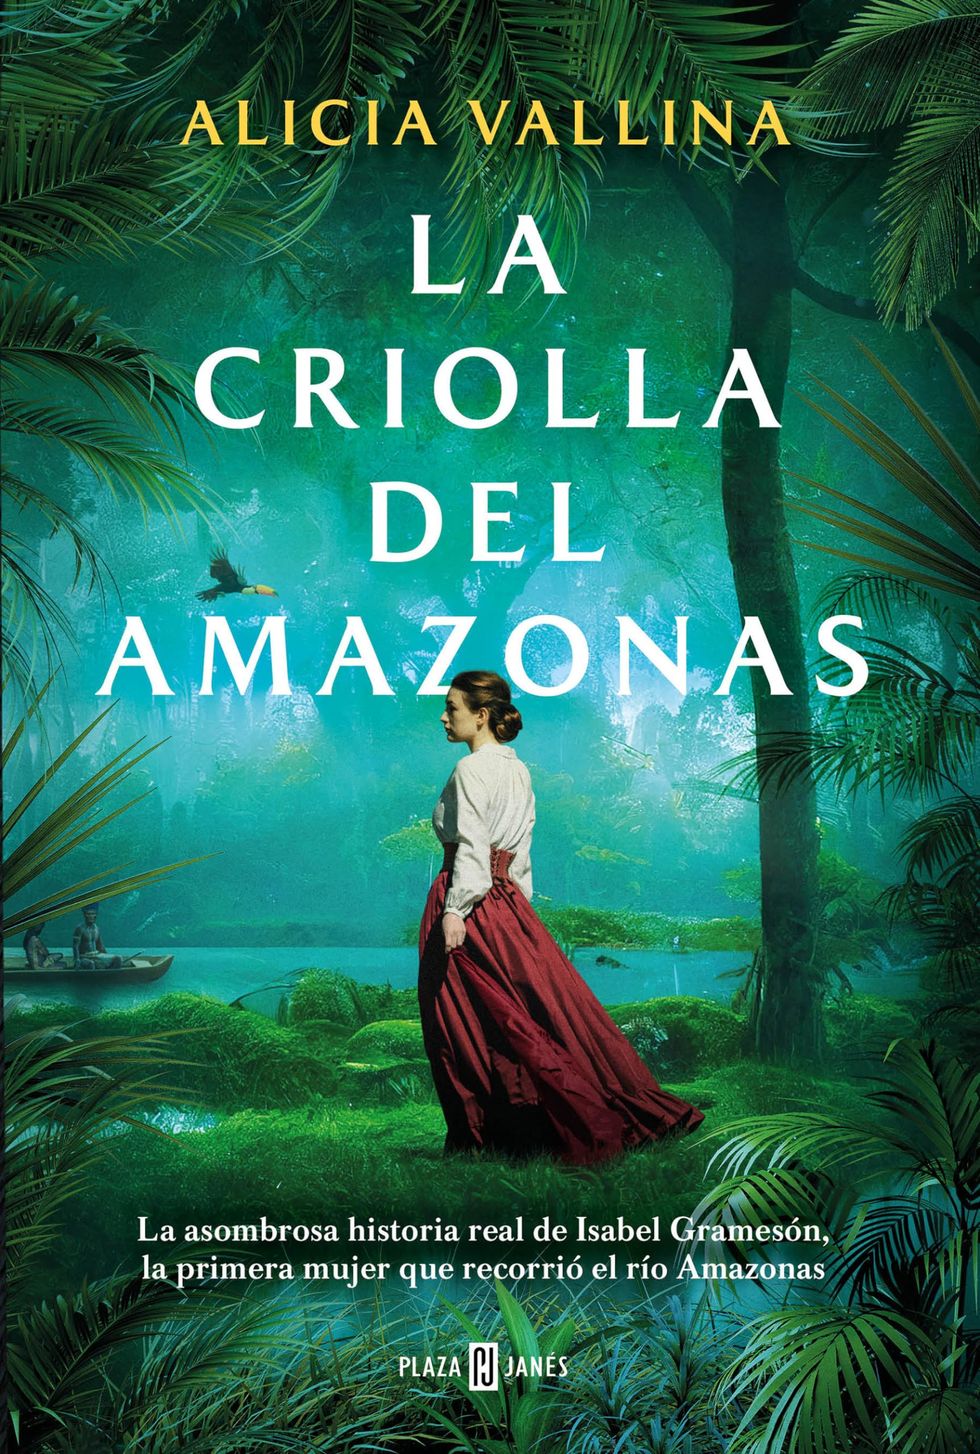 'La criolla del Amazonas' de Alicia Vallina